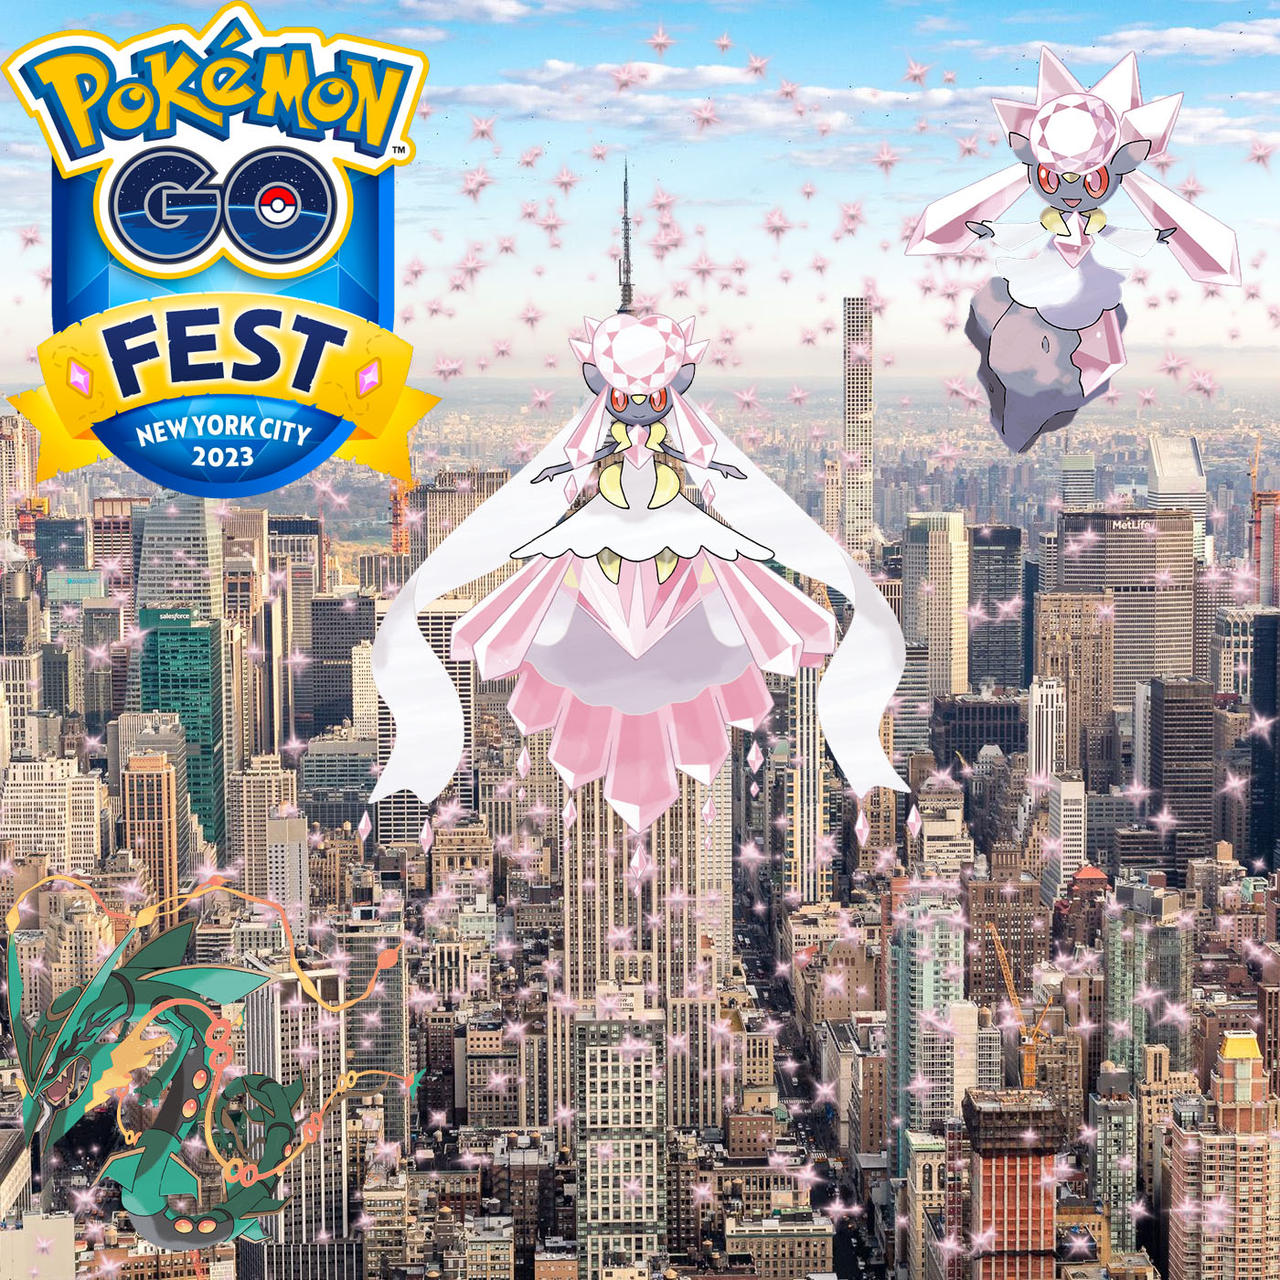 Pokémon GO Fest 2023: New York City